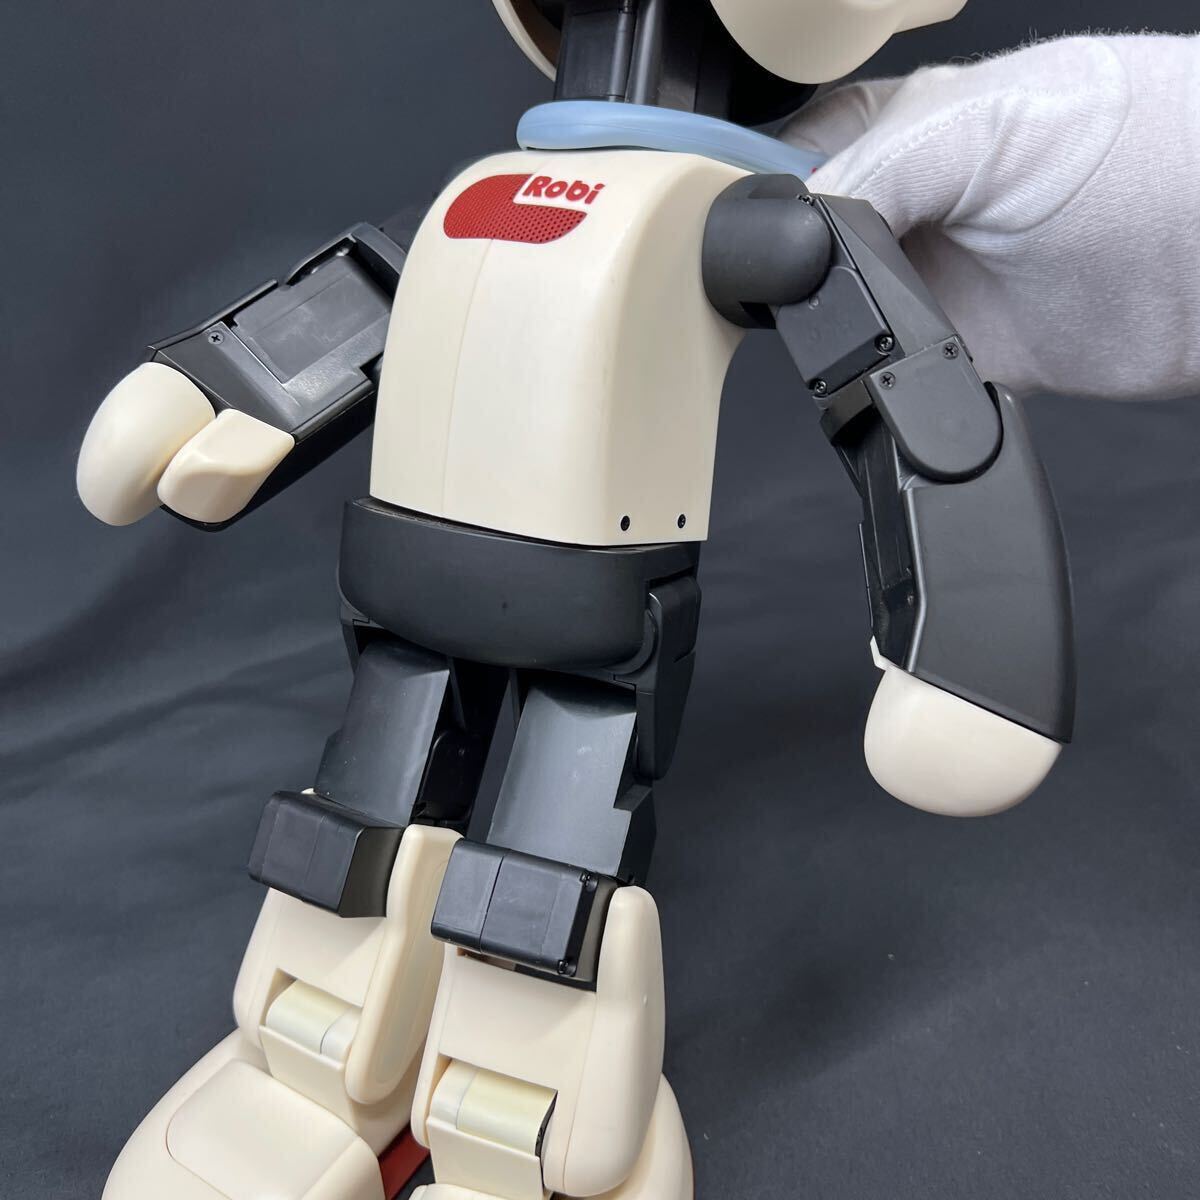 デアゴスティーニ DeAGOSTINI Robi ロビ No.1〜70 専用バインダー ロボット 現状品 動作未確認の画像5